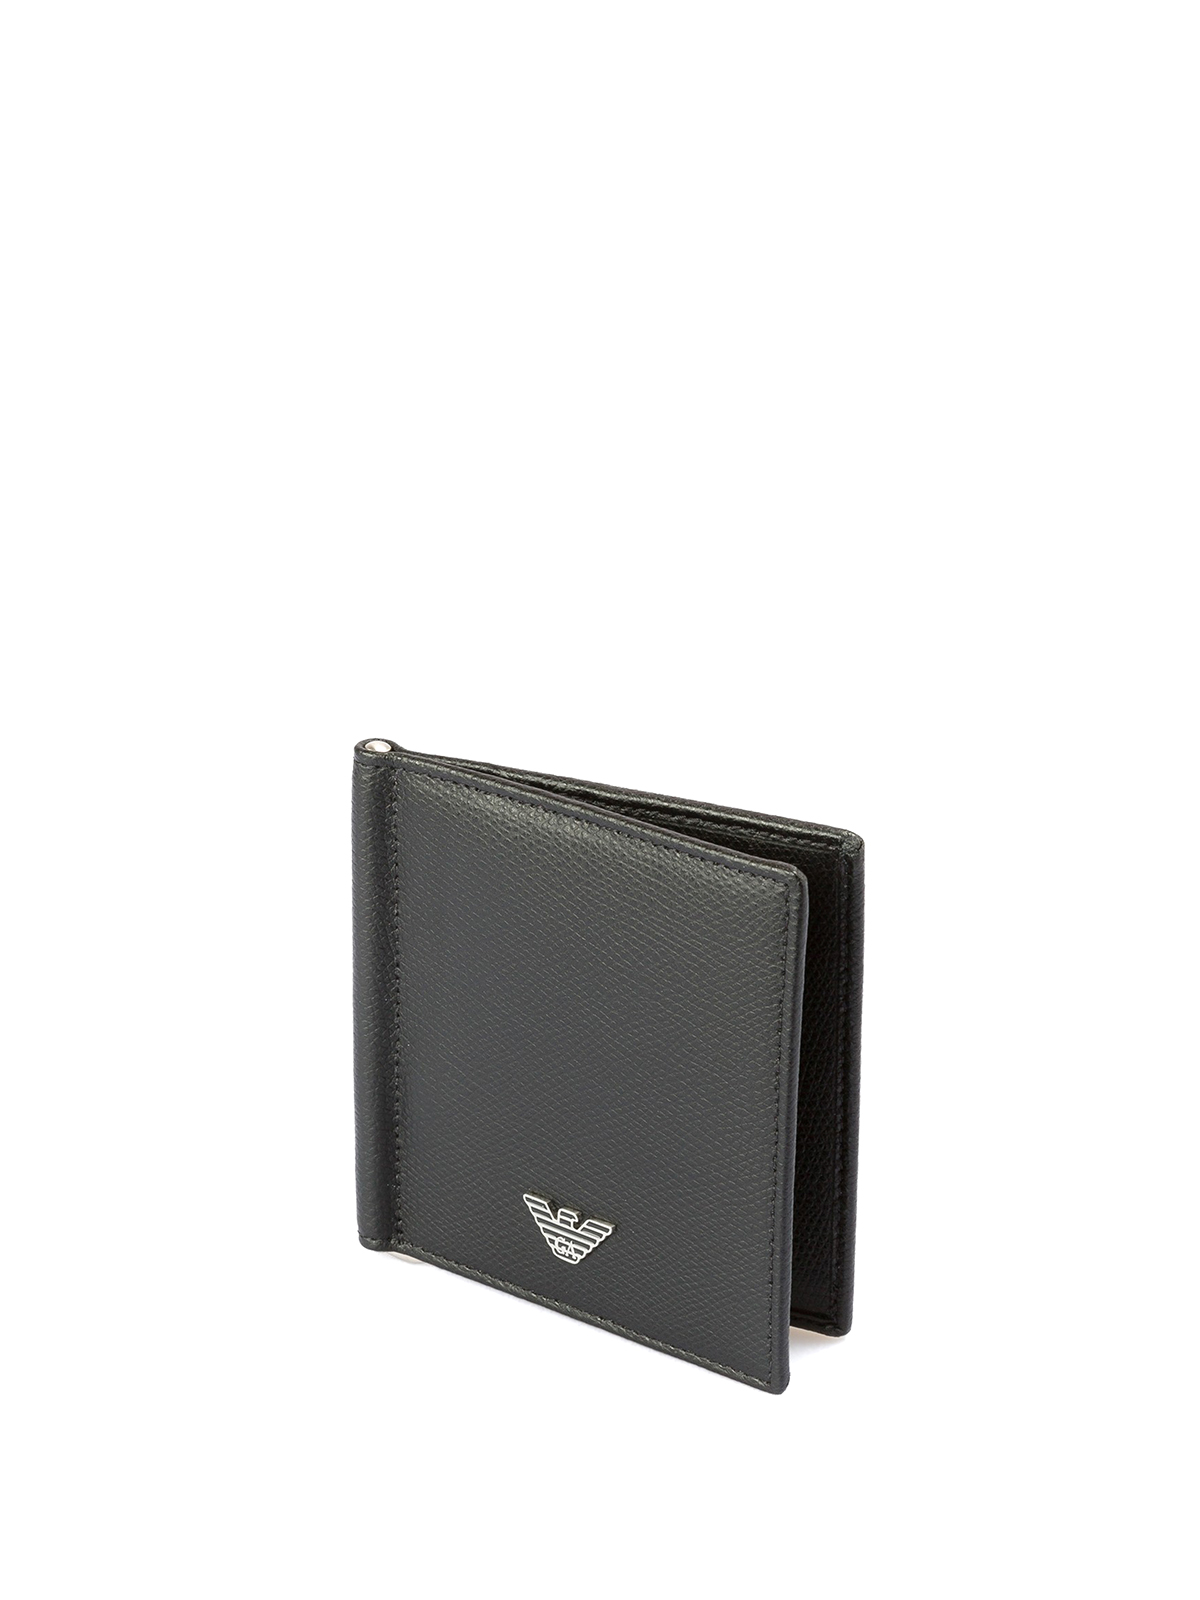 Wallets & purses Emporio Armani - Bifold money clip wallet -  YEML07YAQ2E181072